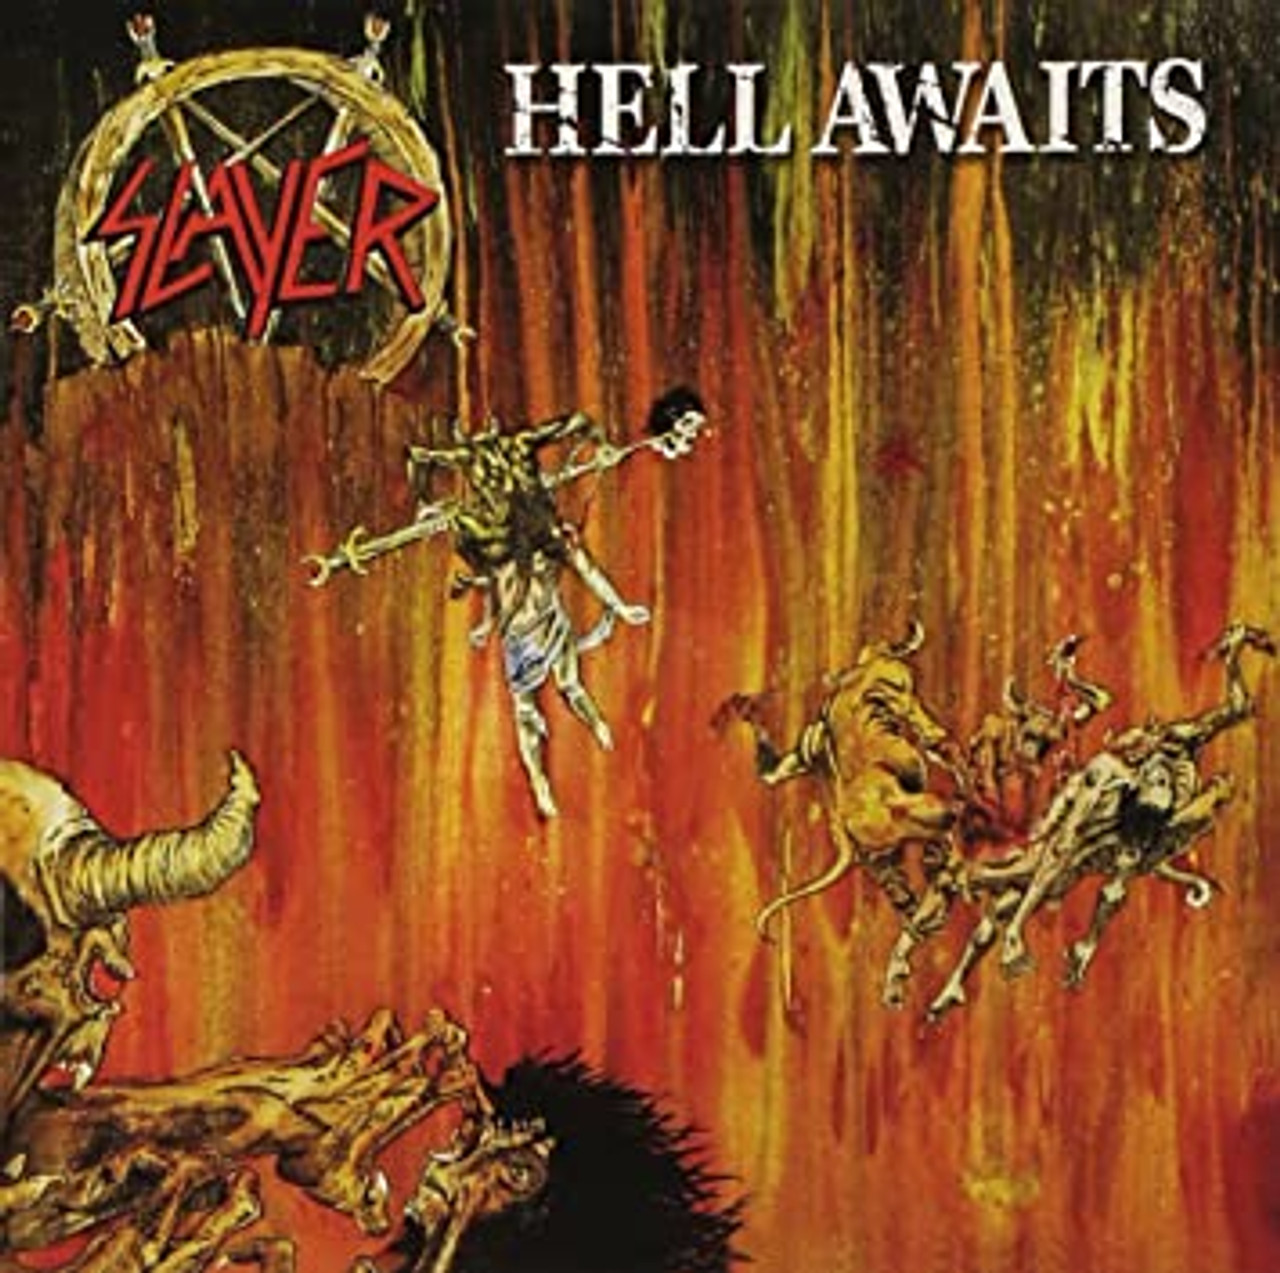 Slayer - Hell Awaits LP (Orange/Black Split Vinyl, Poster)